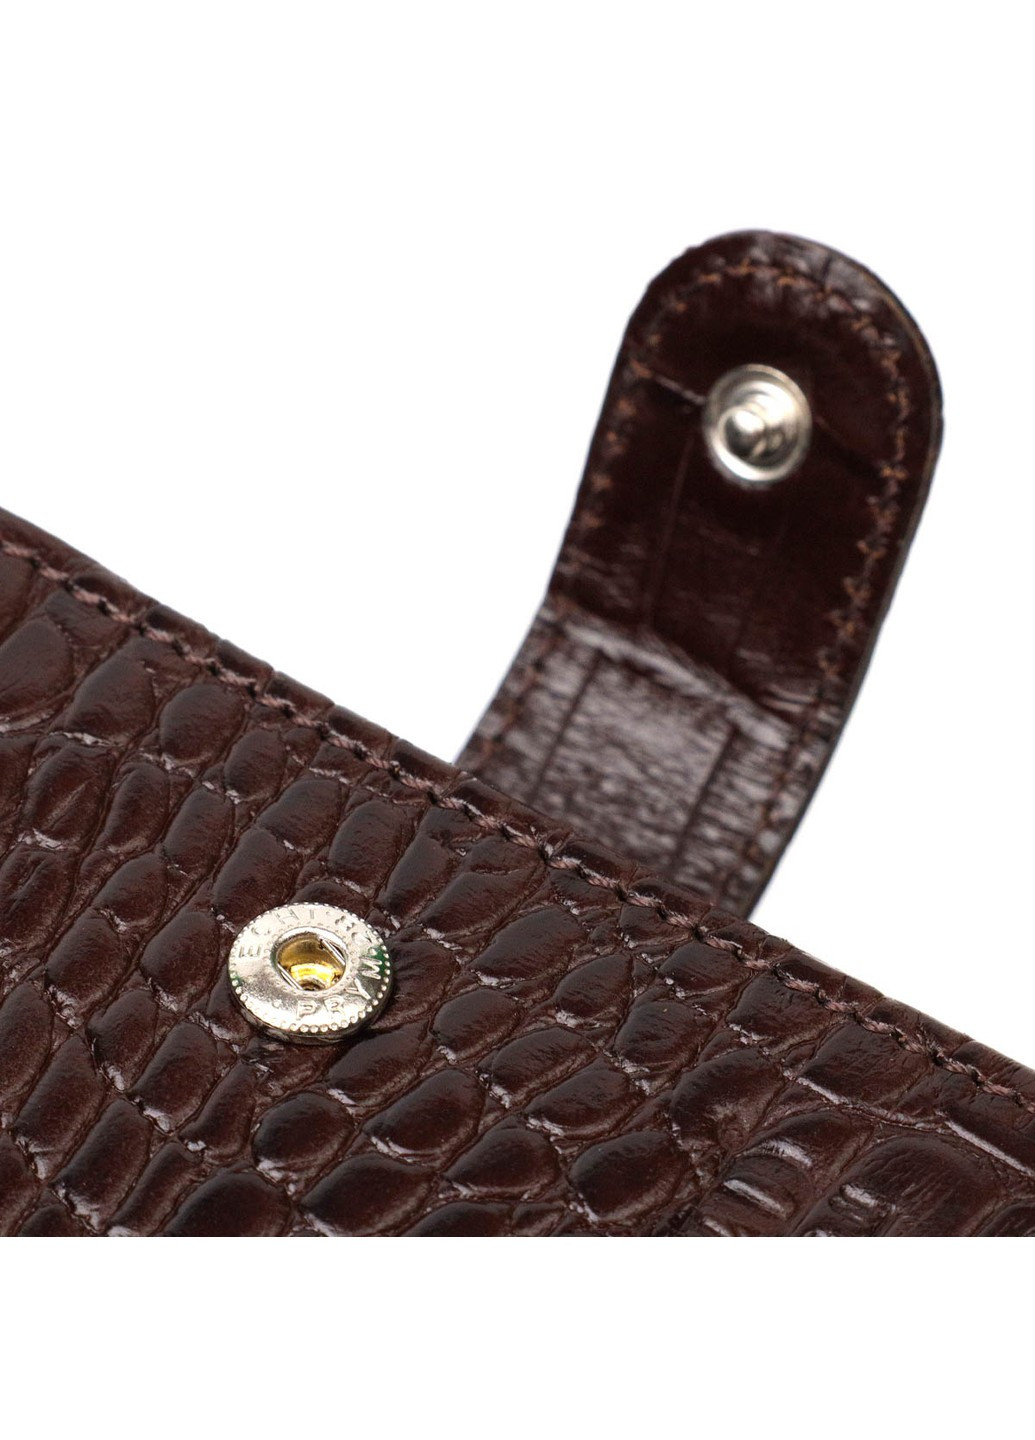 Функциональный небольшой бумажник для мужчин из натуральной кожи с тиснением под крокодила 21998 Коричневый Bond (262158000)